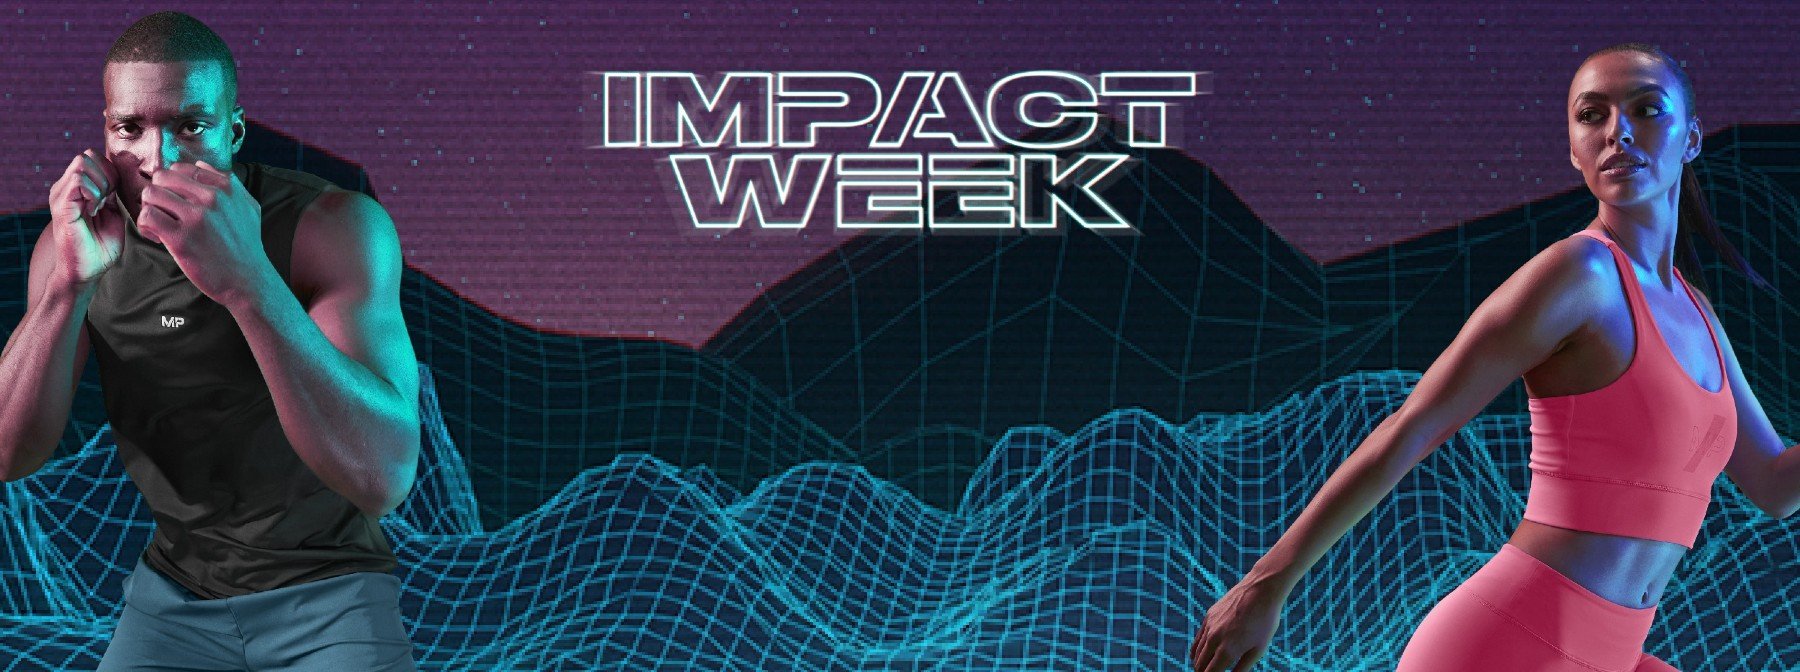 Impact Week je tu! | Časovo limitovaná akcia, v ktorej nájdete oblečenie a doplnky za najlepšie ceny